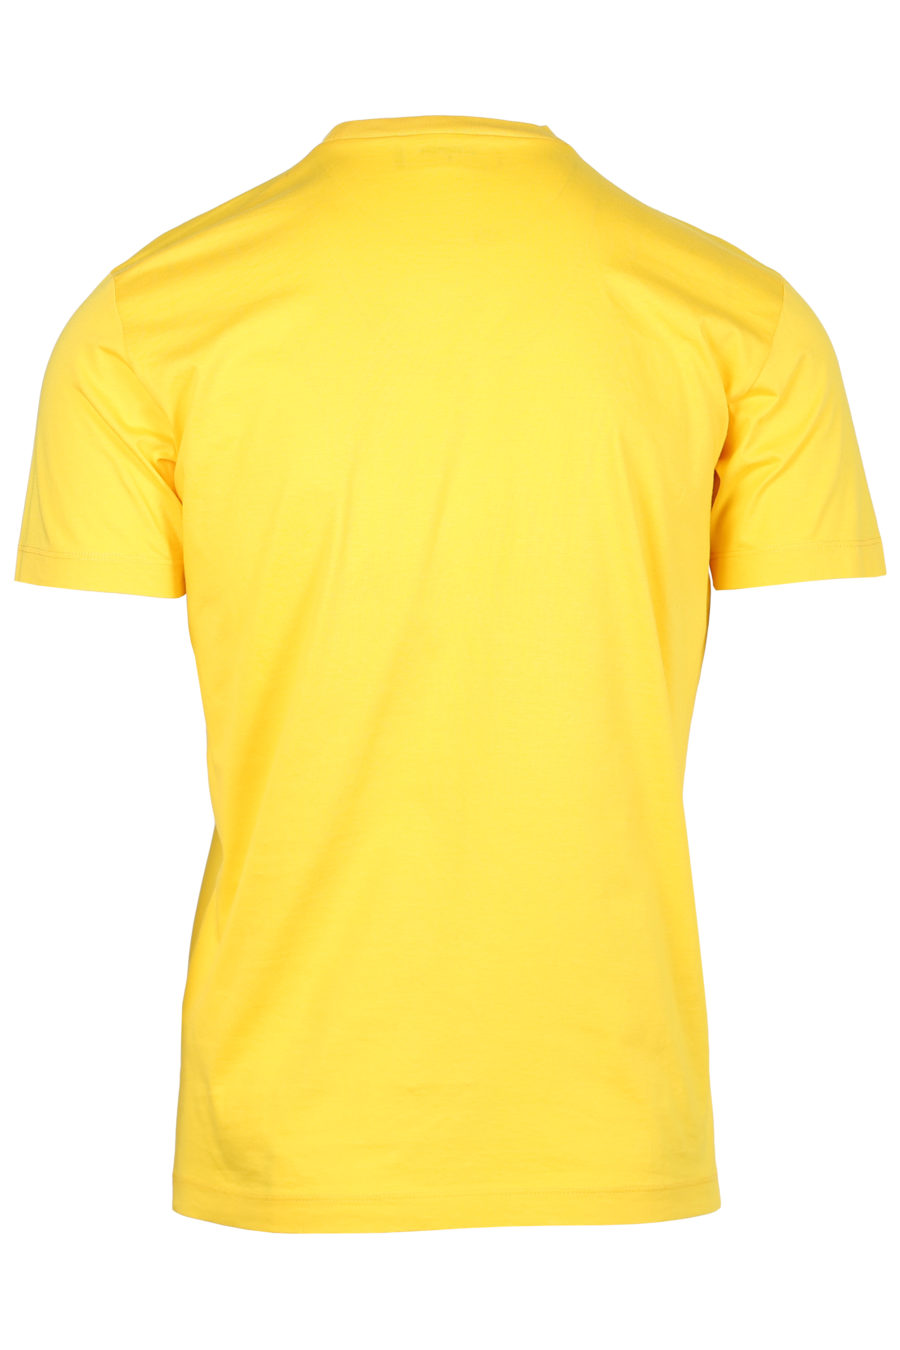 T-shirt jaune avec le logo "Icon Spray" - IMG 2330